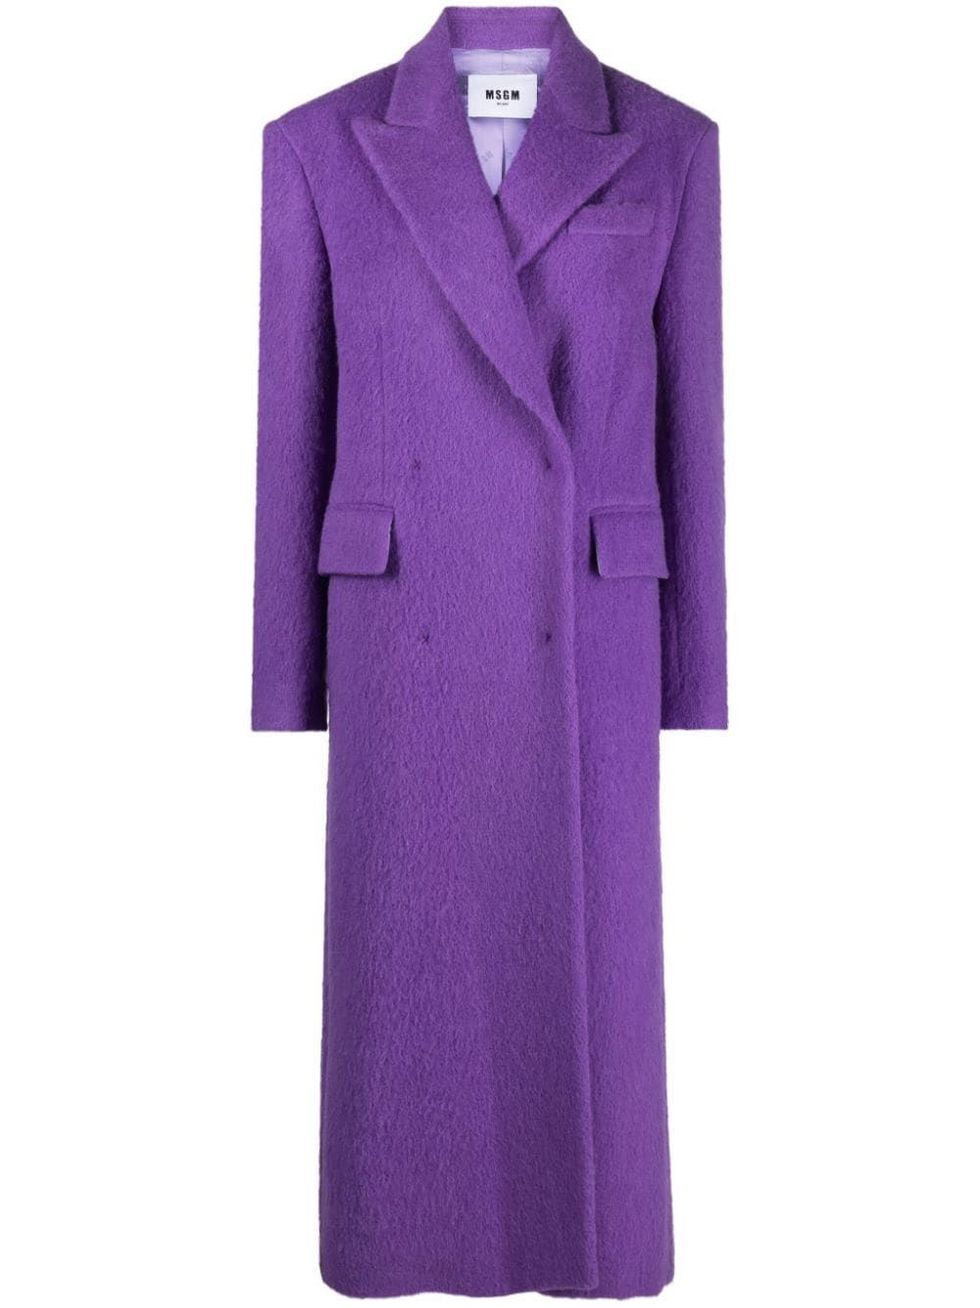 Abrigo de lana y alpaca púrpura